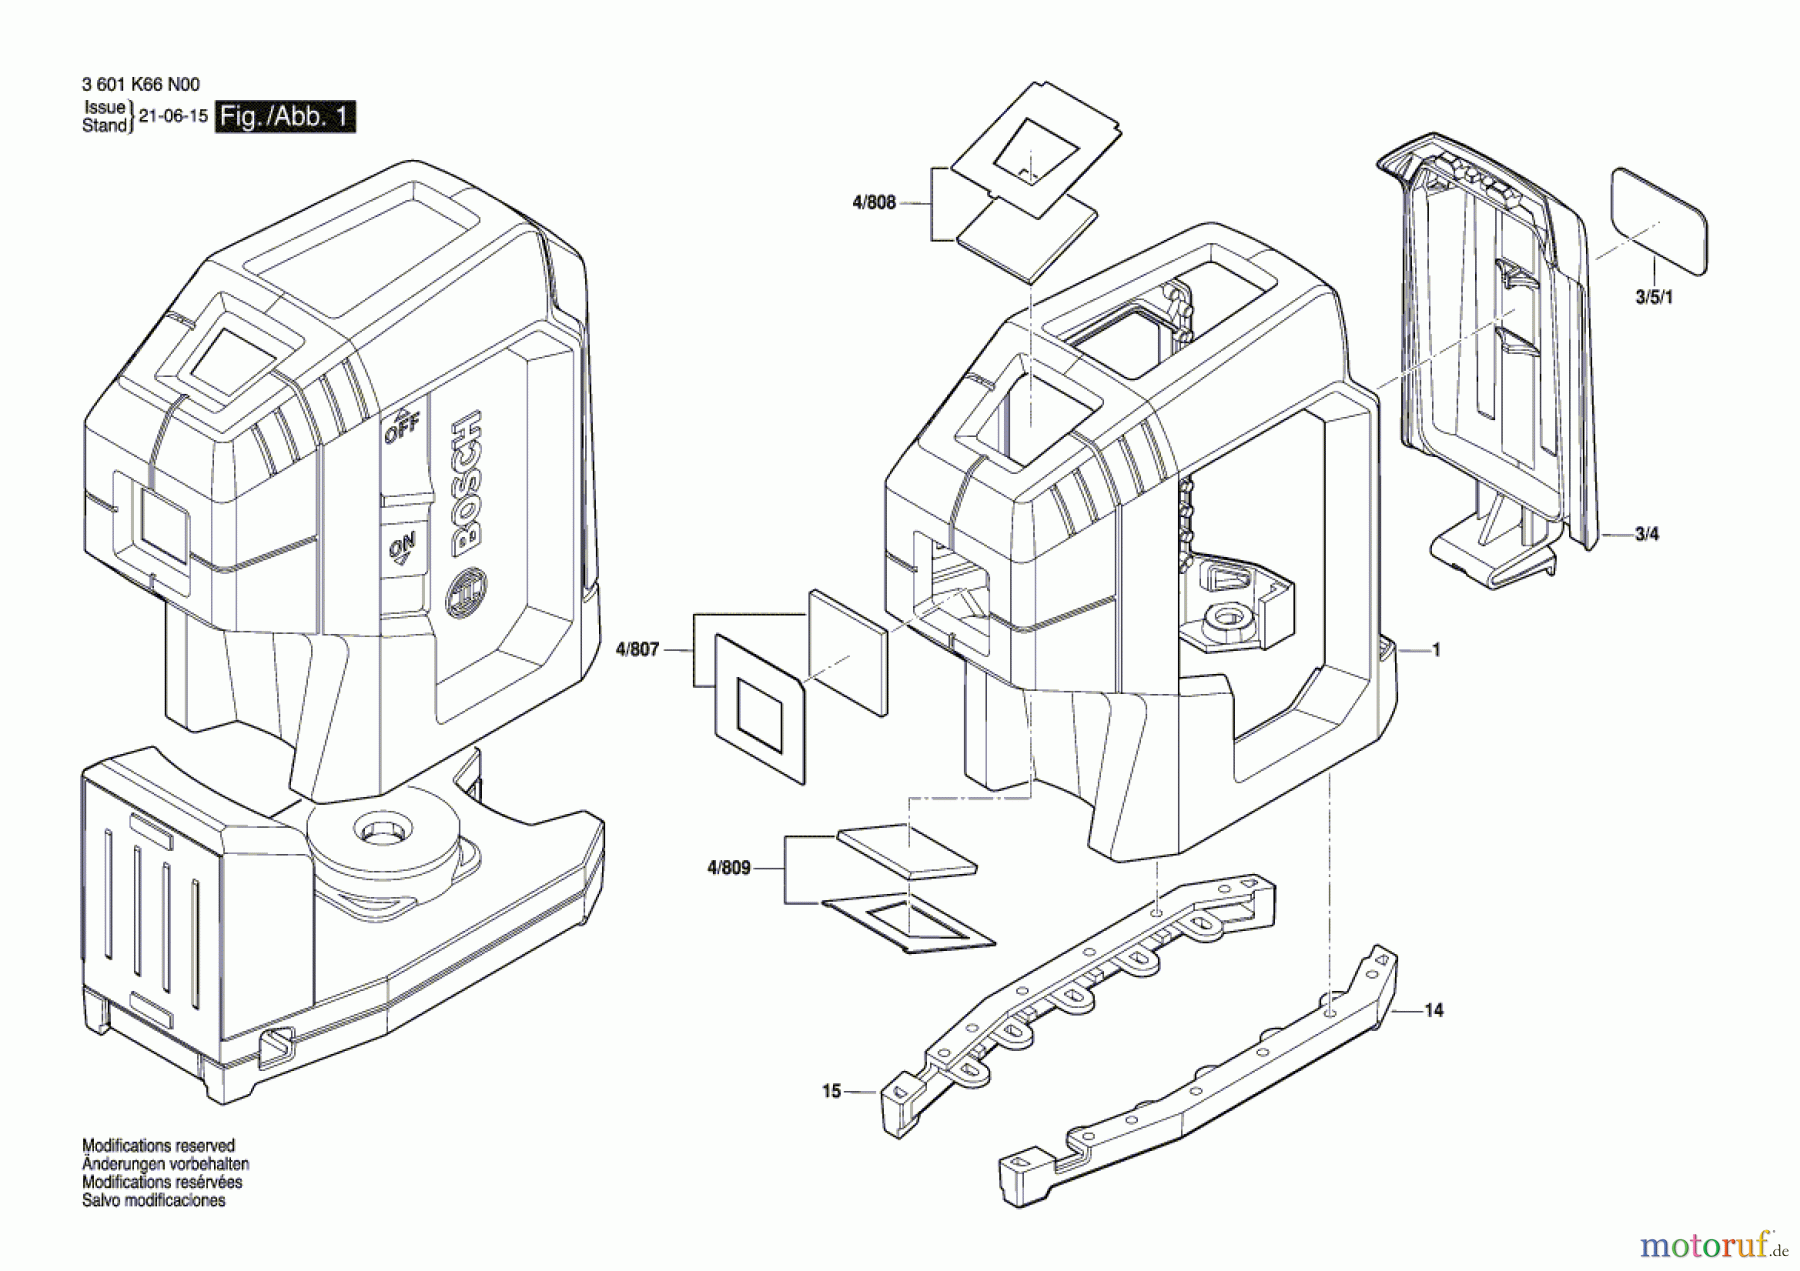  Bosch Werkzeug Baulaser GPL 3 G Seite 1